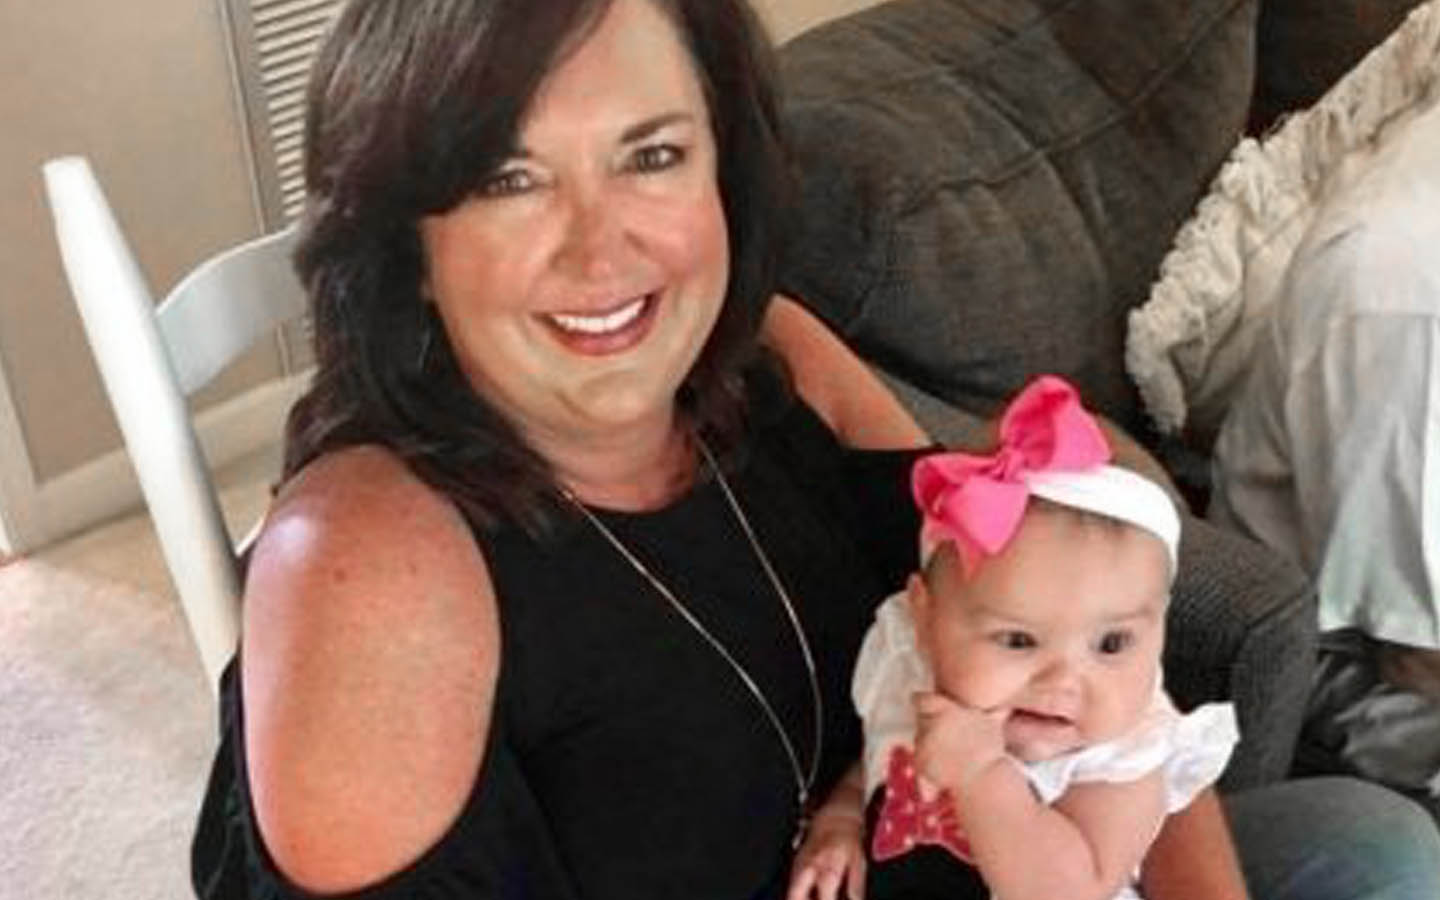 Implantatbrugeren Angie poserer til et billede sammen med en baby